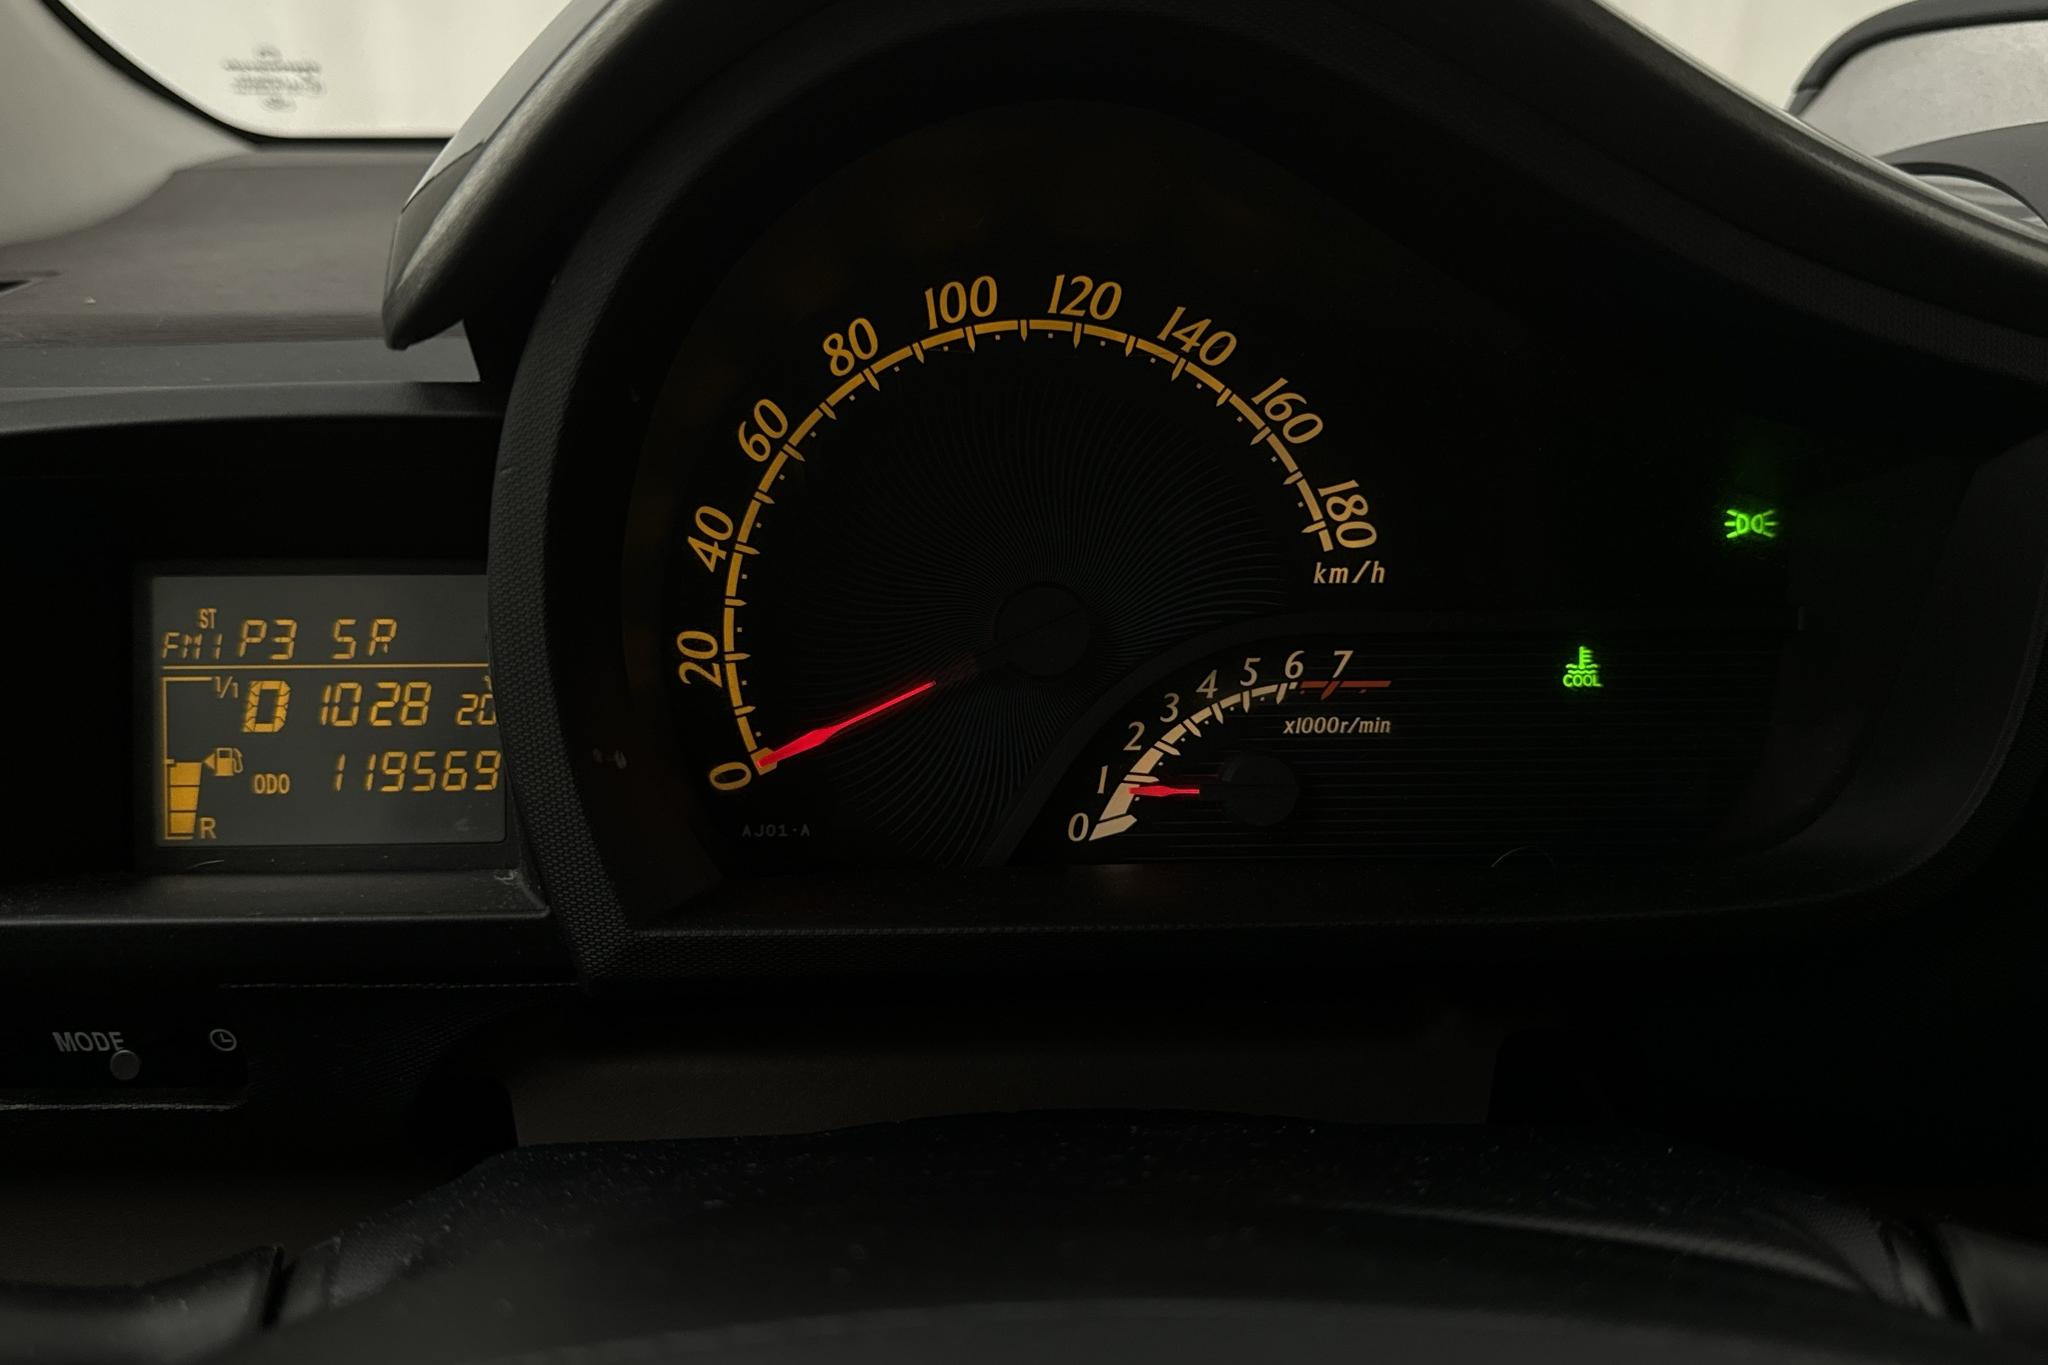 Toyota iQ 1.0 (68hk) - 11 957 mil - Automat - 2009